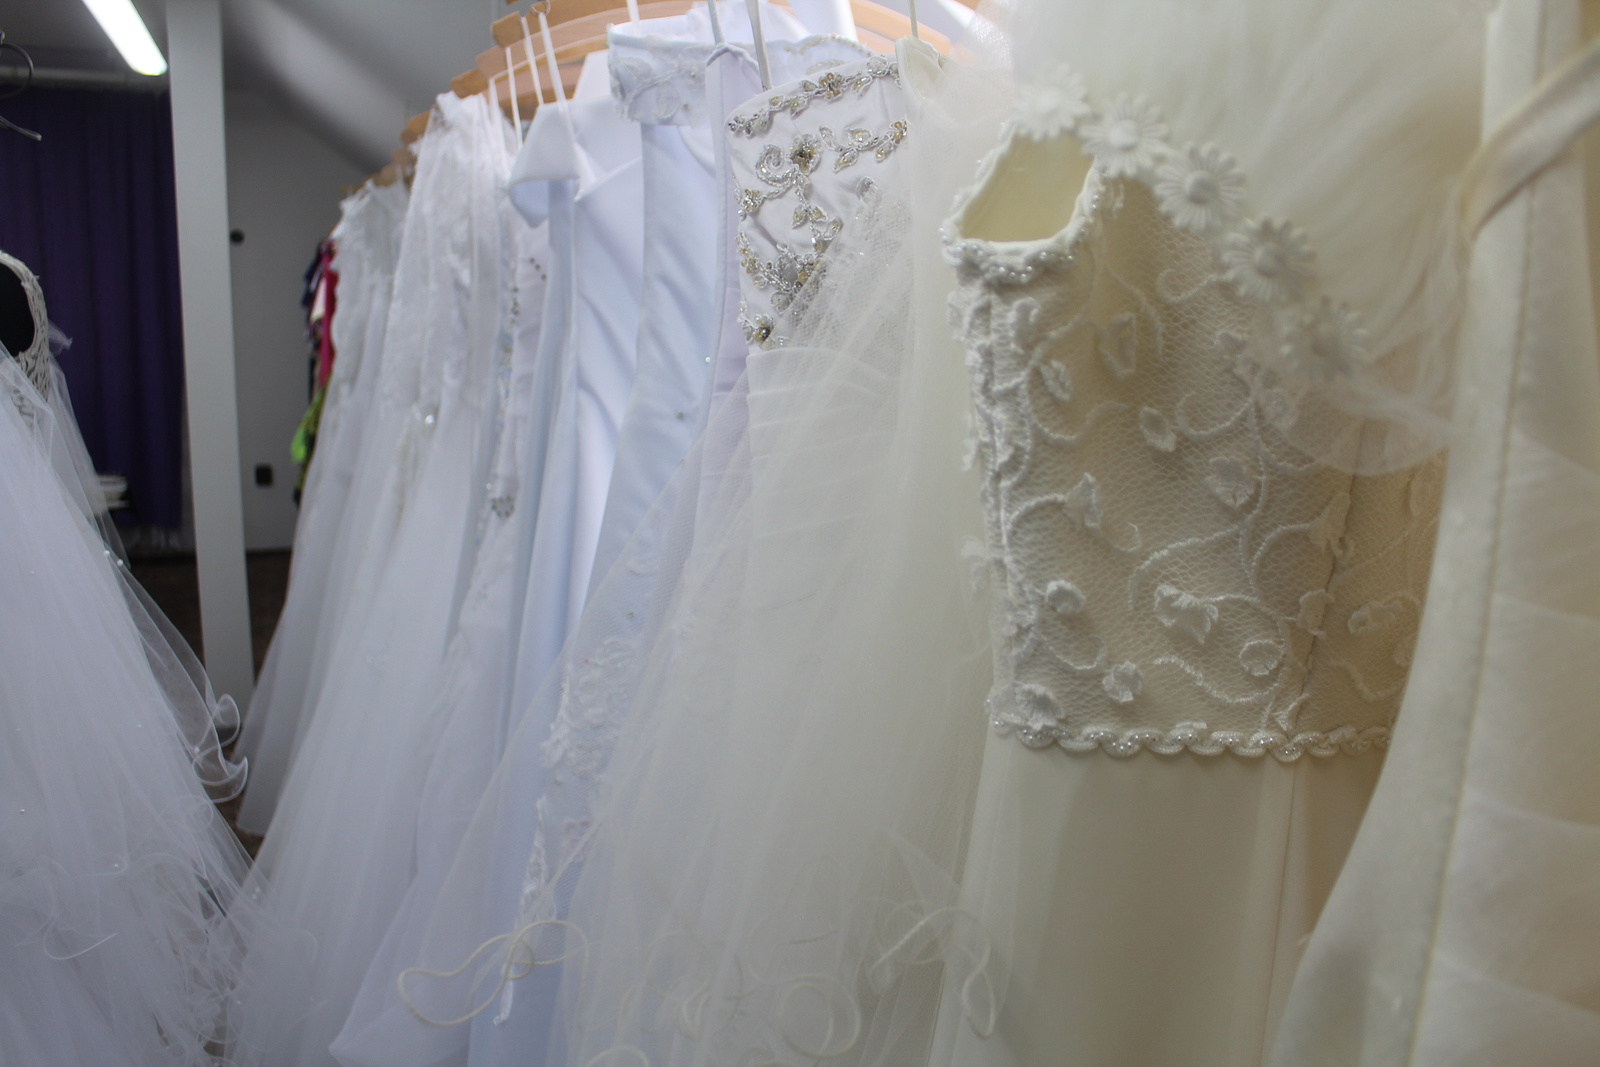 Móda svatebních šatů se mění, vyplatí se je půjčovat, říká švadlena z  Jičíněvsi - Jičínský deník